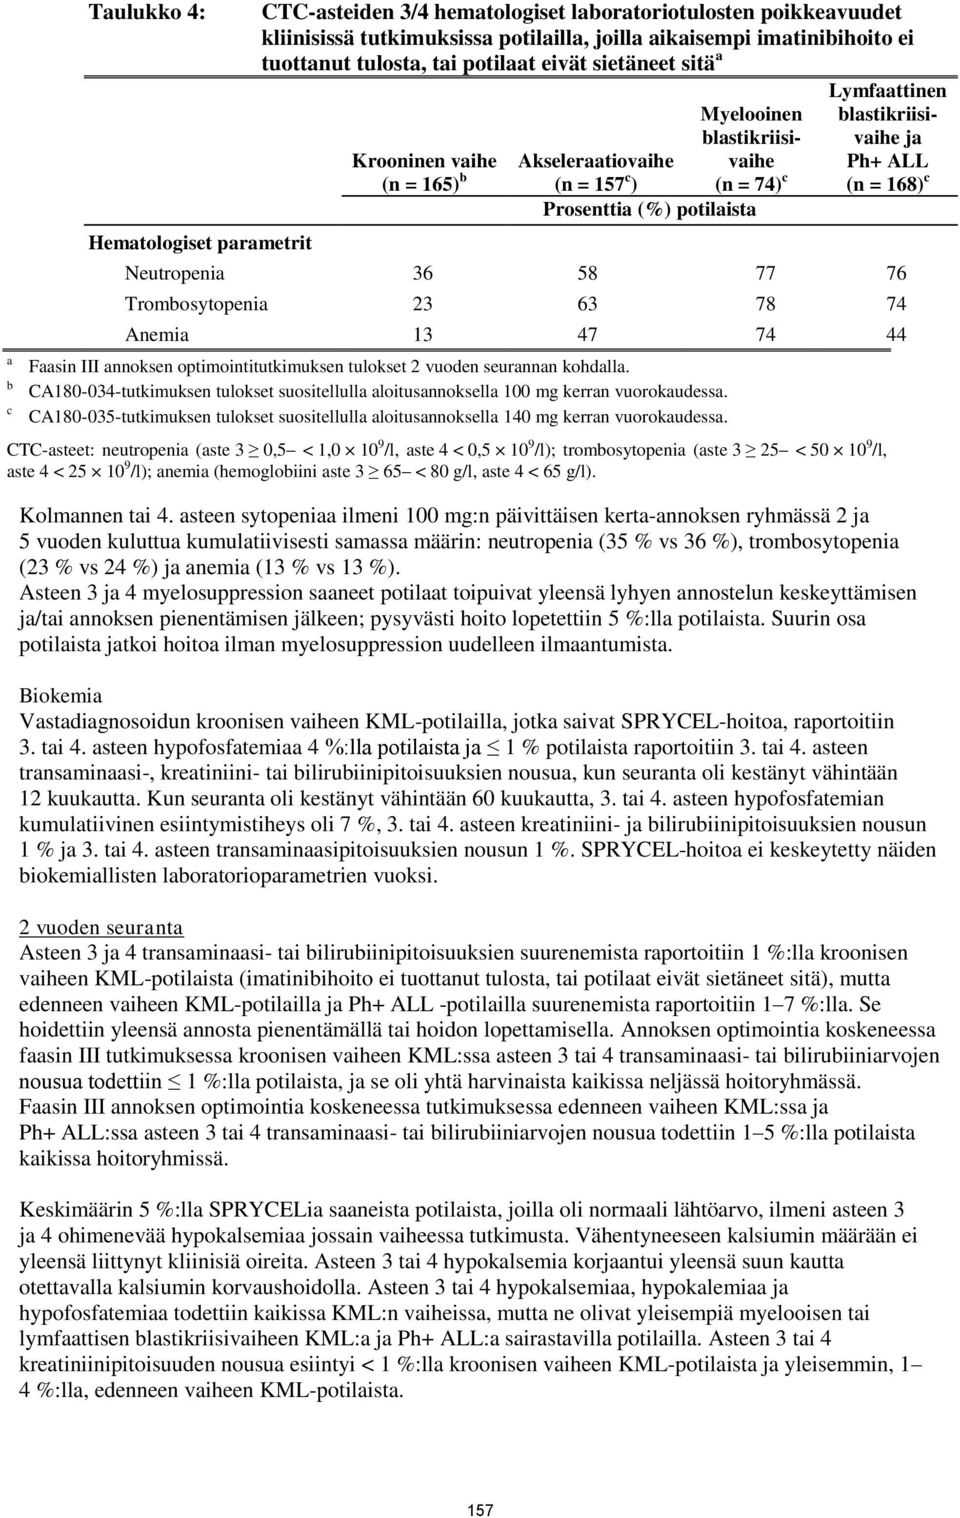 blastikriisivaihe ja Ph+ ALL (n = 168) c Neutropenia 36 58 77 76 Trombosytopenia 23 63 78 74 Anemia 13 47 74 44 Faasin III annoksen optimointitutkimuksen tulokset 2 vuoden seurannan kohdalla.